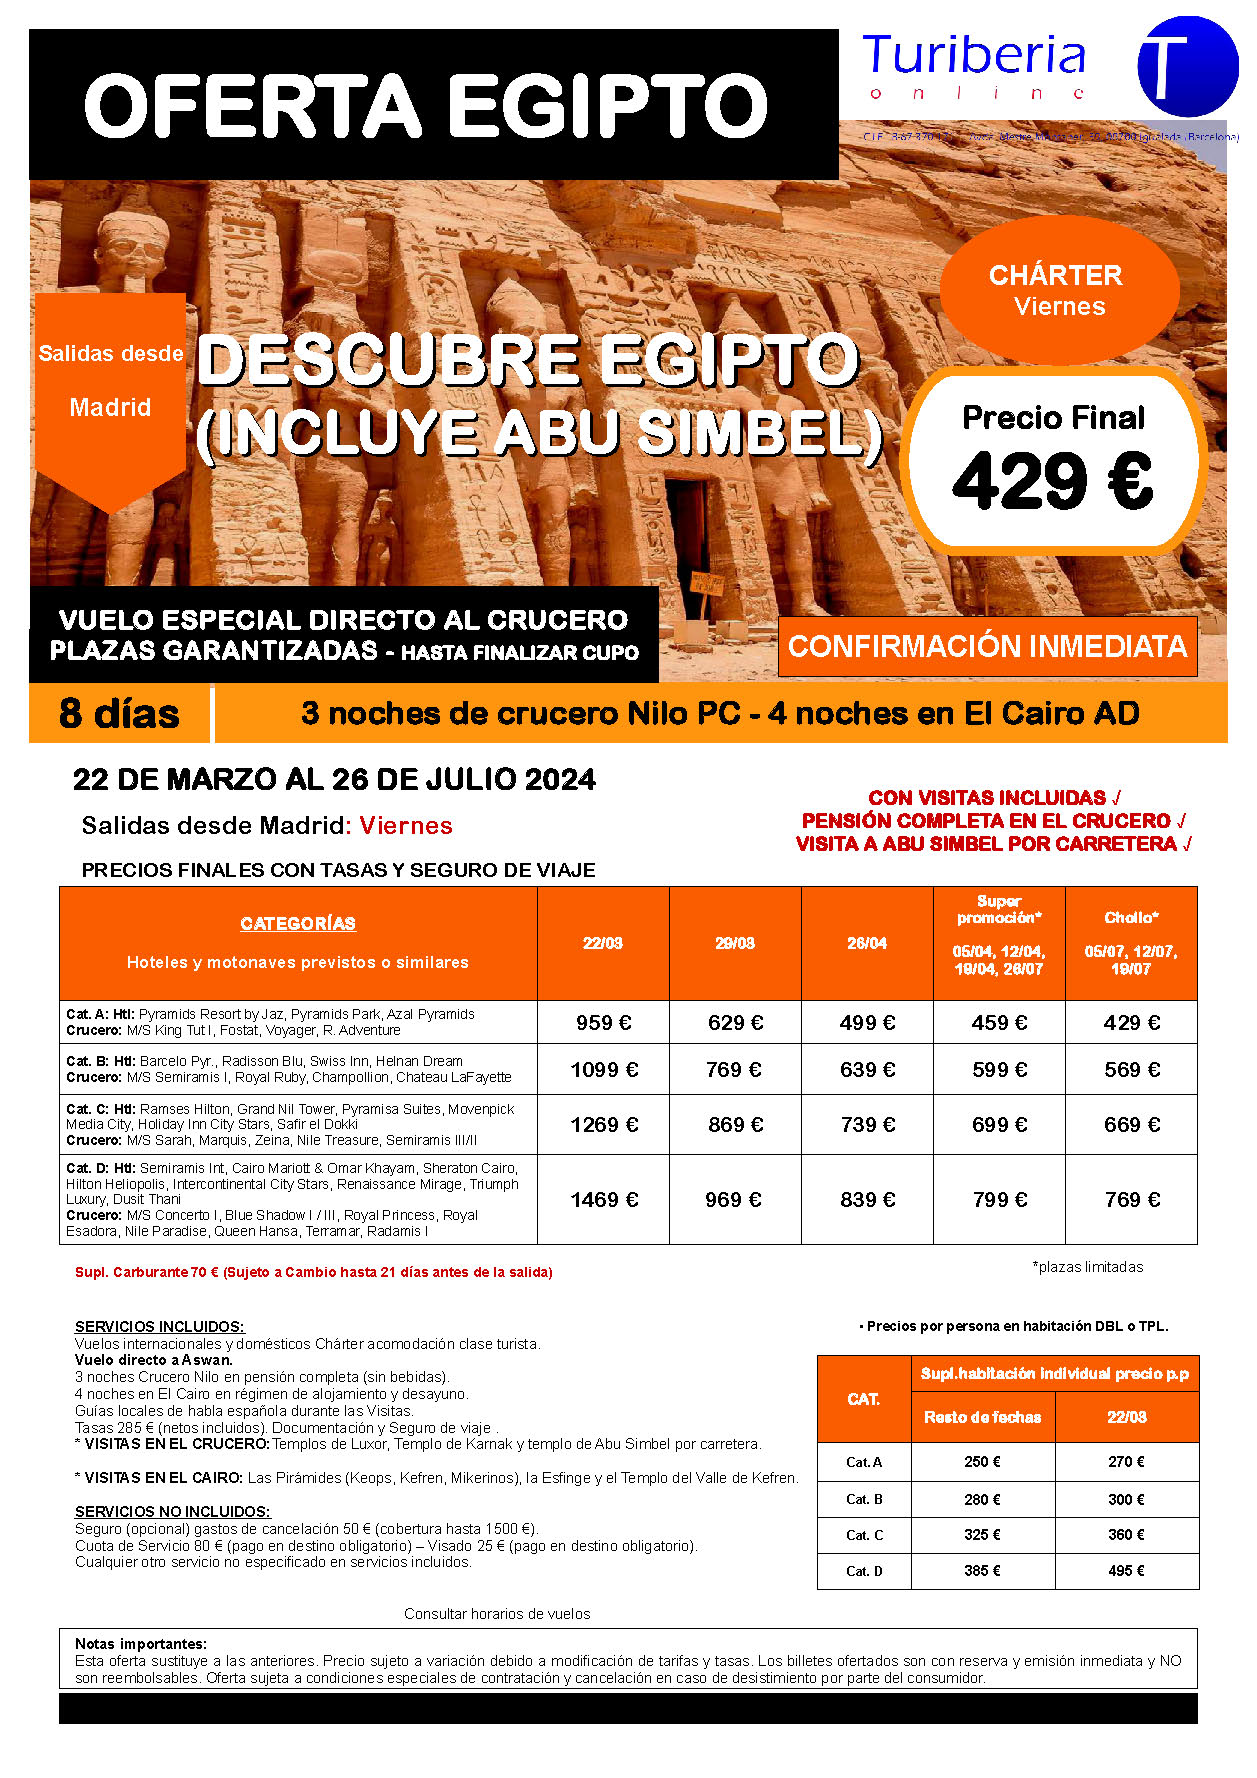 Oferta Turiberia circuito Descubre Egipto con Abu Simbel charter 8 dias salidas Marzo a Julio 2024 en vuelo directo a Asuan desde Madrid